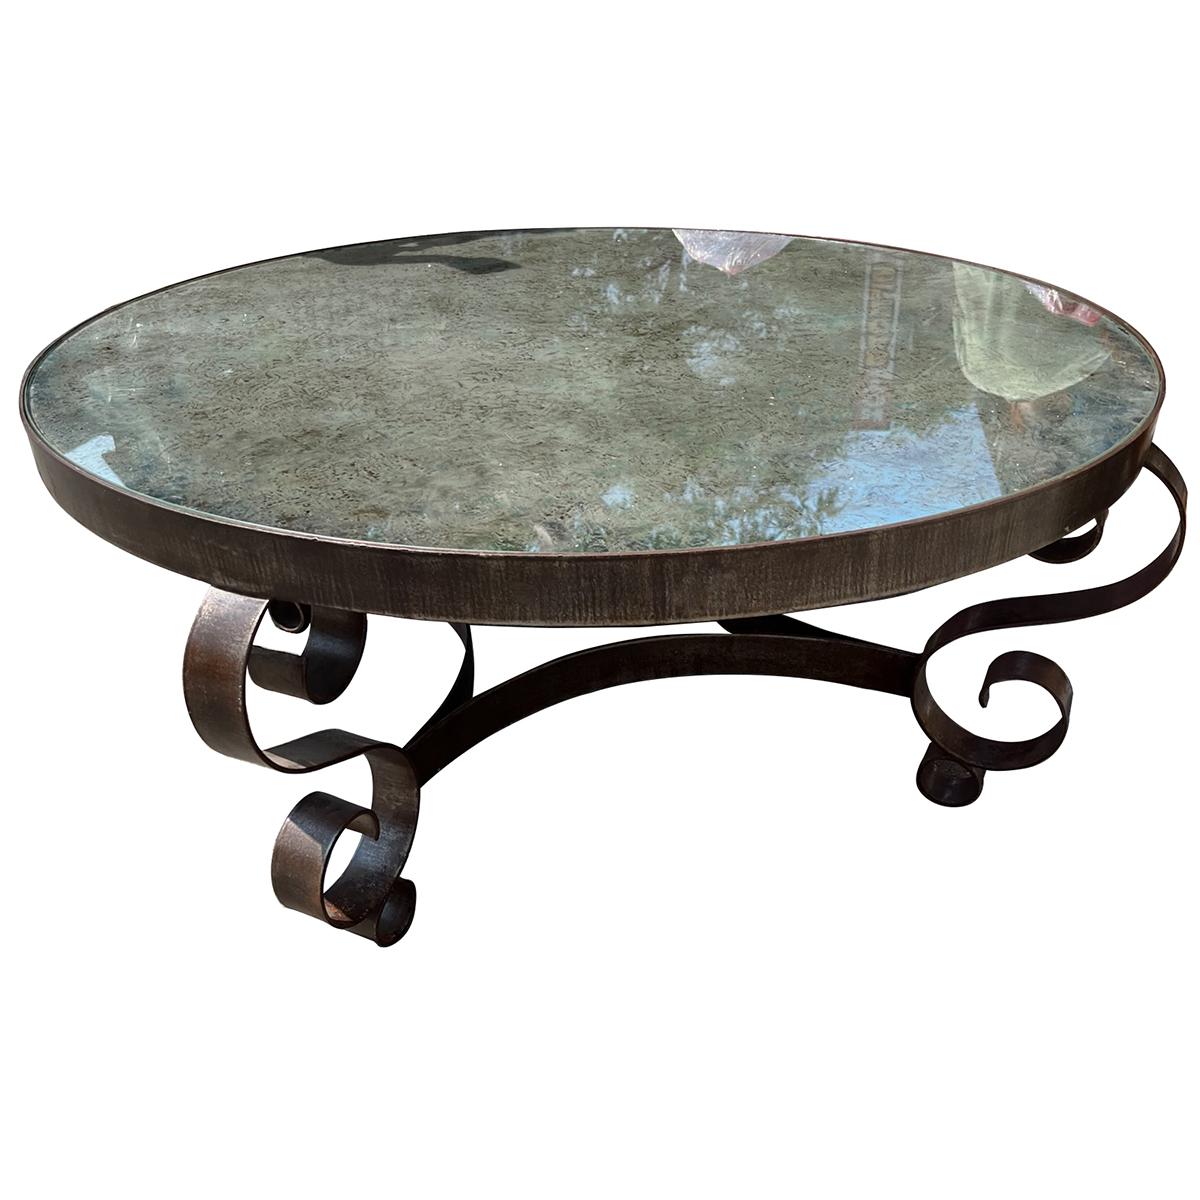 Table ronde en fer forgé français des années 1920 avec dessus en miroir.

Mesures :
diamètre : 41.5